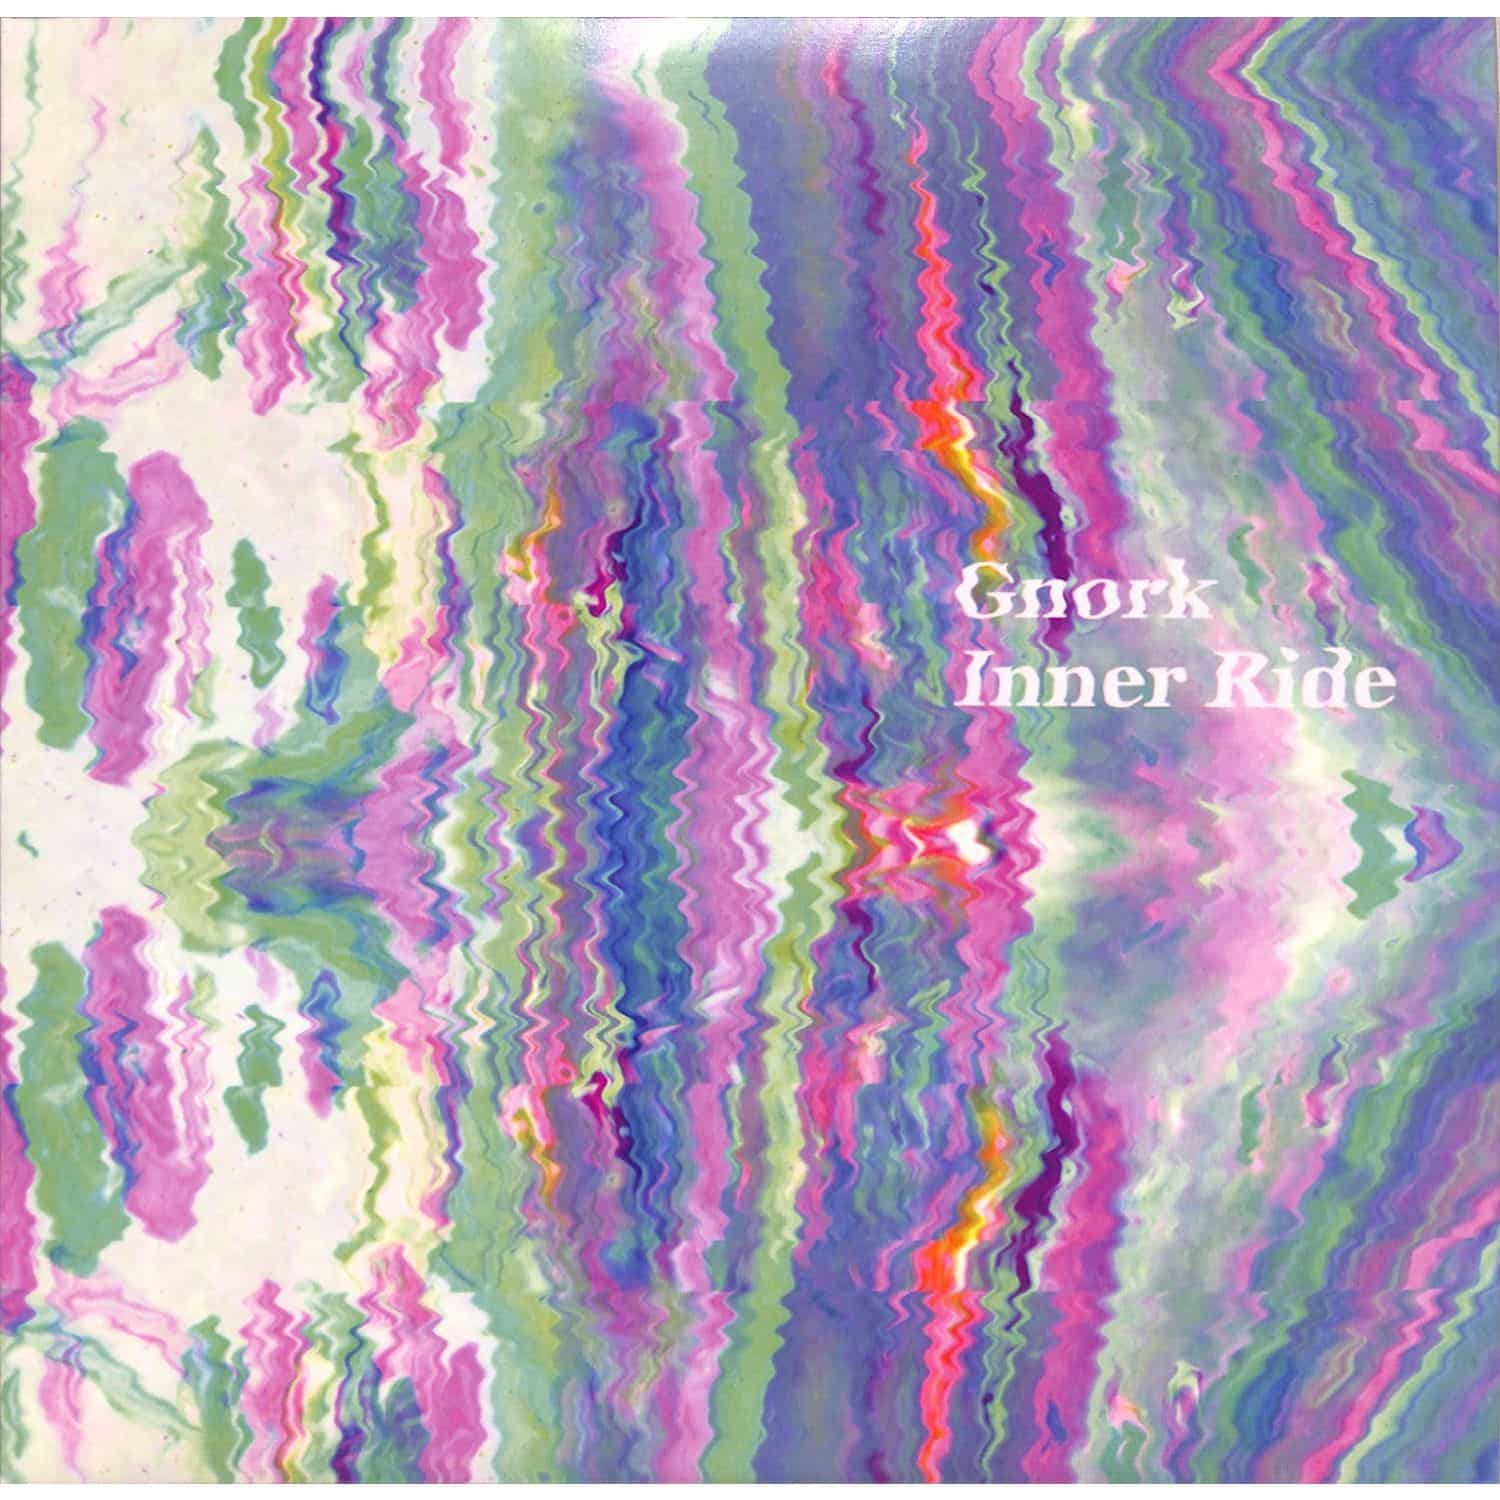 Gnork - INNER RIDE 